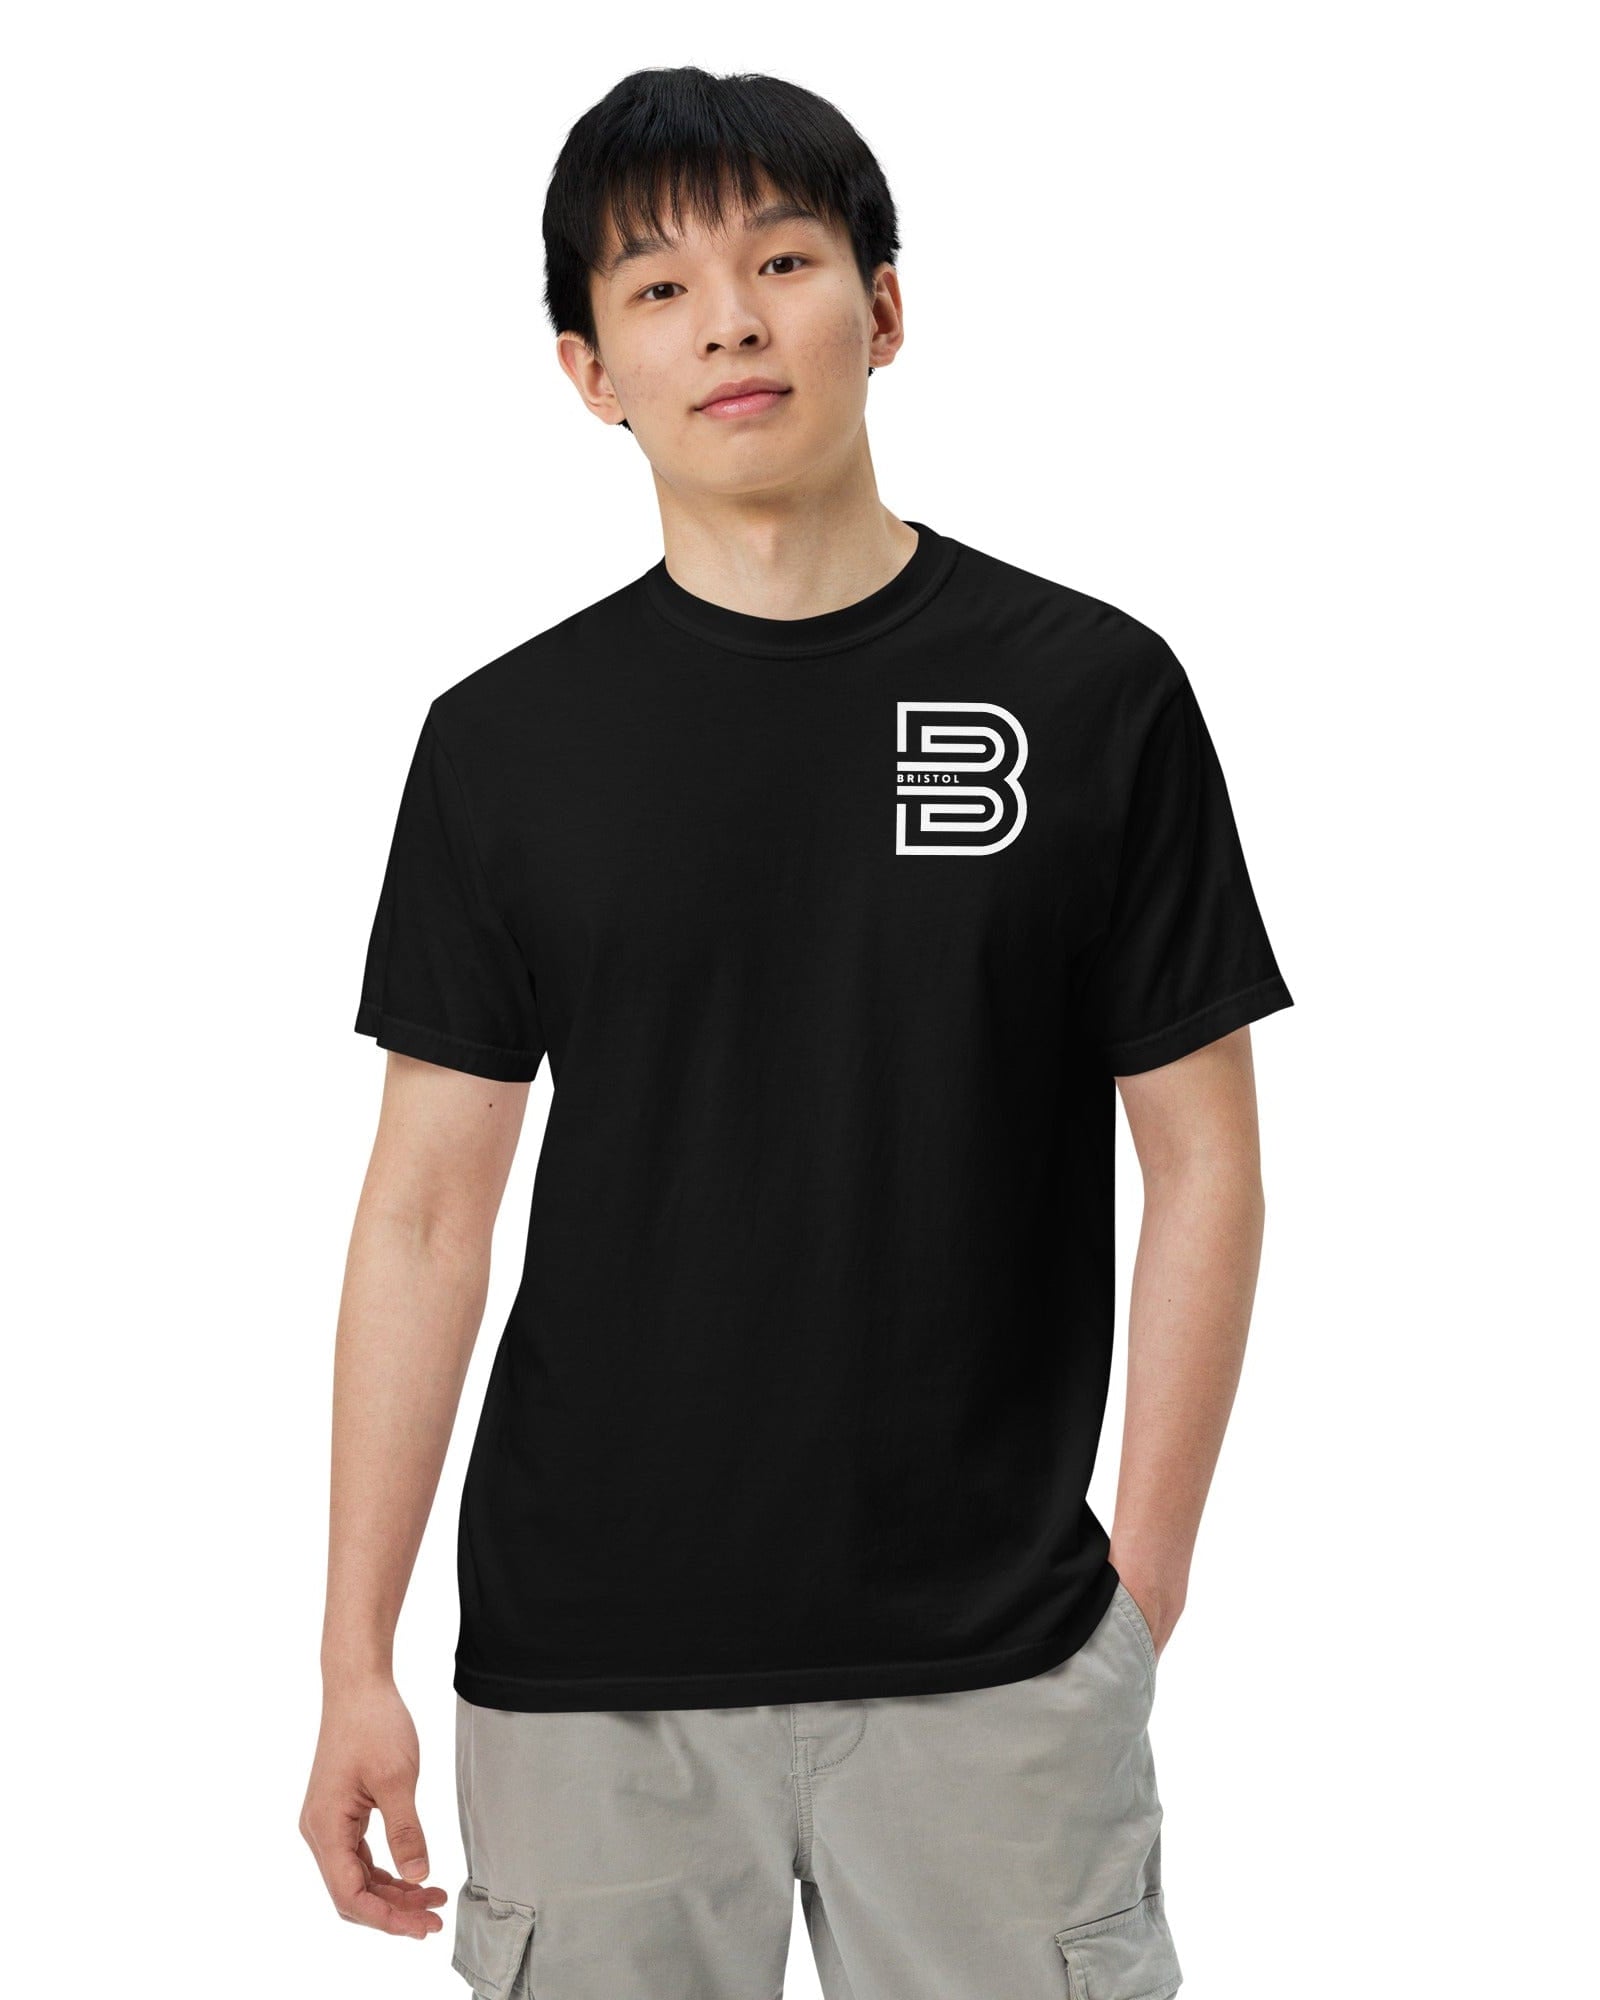 Bristol B T-shirt | Garment-dyed Heavyweight Shirts & Tops Jolly & Goode